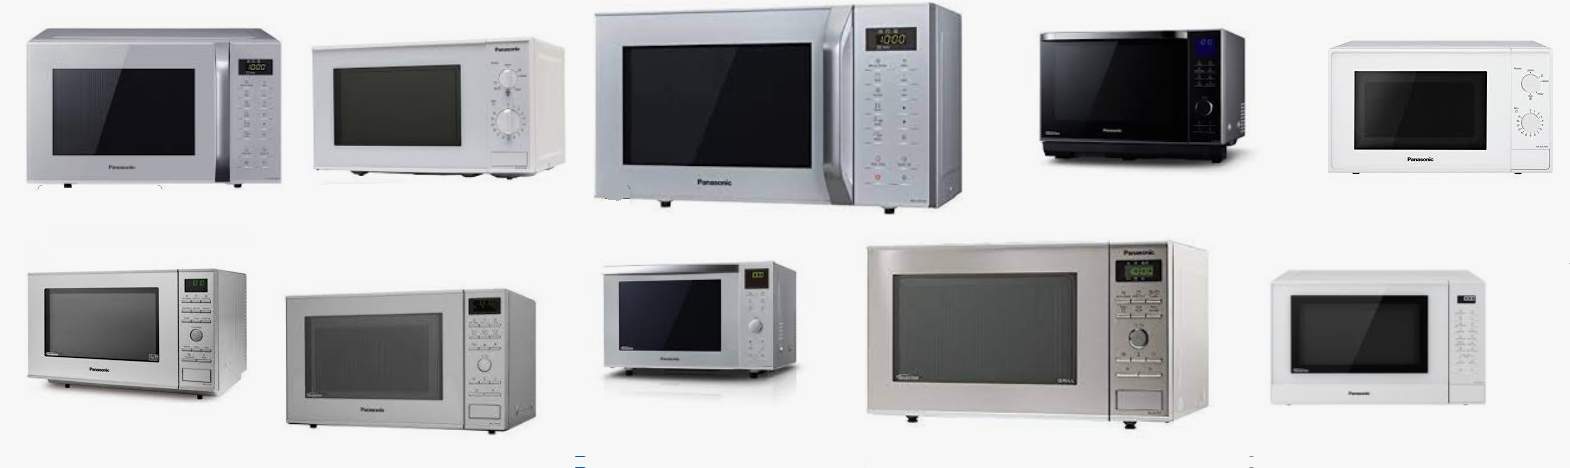 Schede tecniche e manuali uso forni a microonde Panasonic